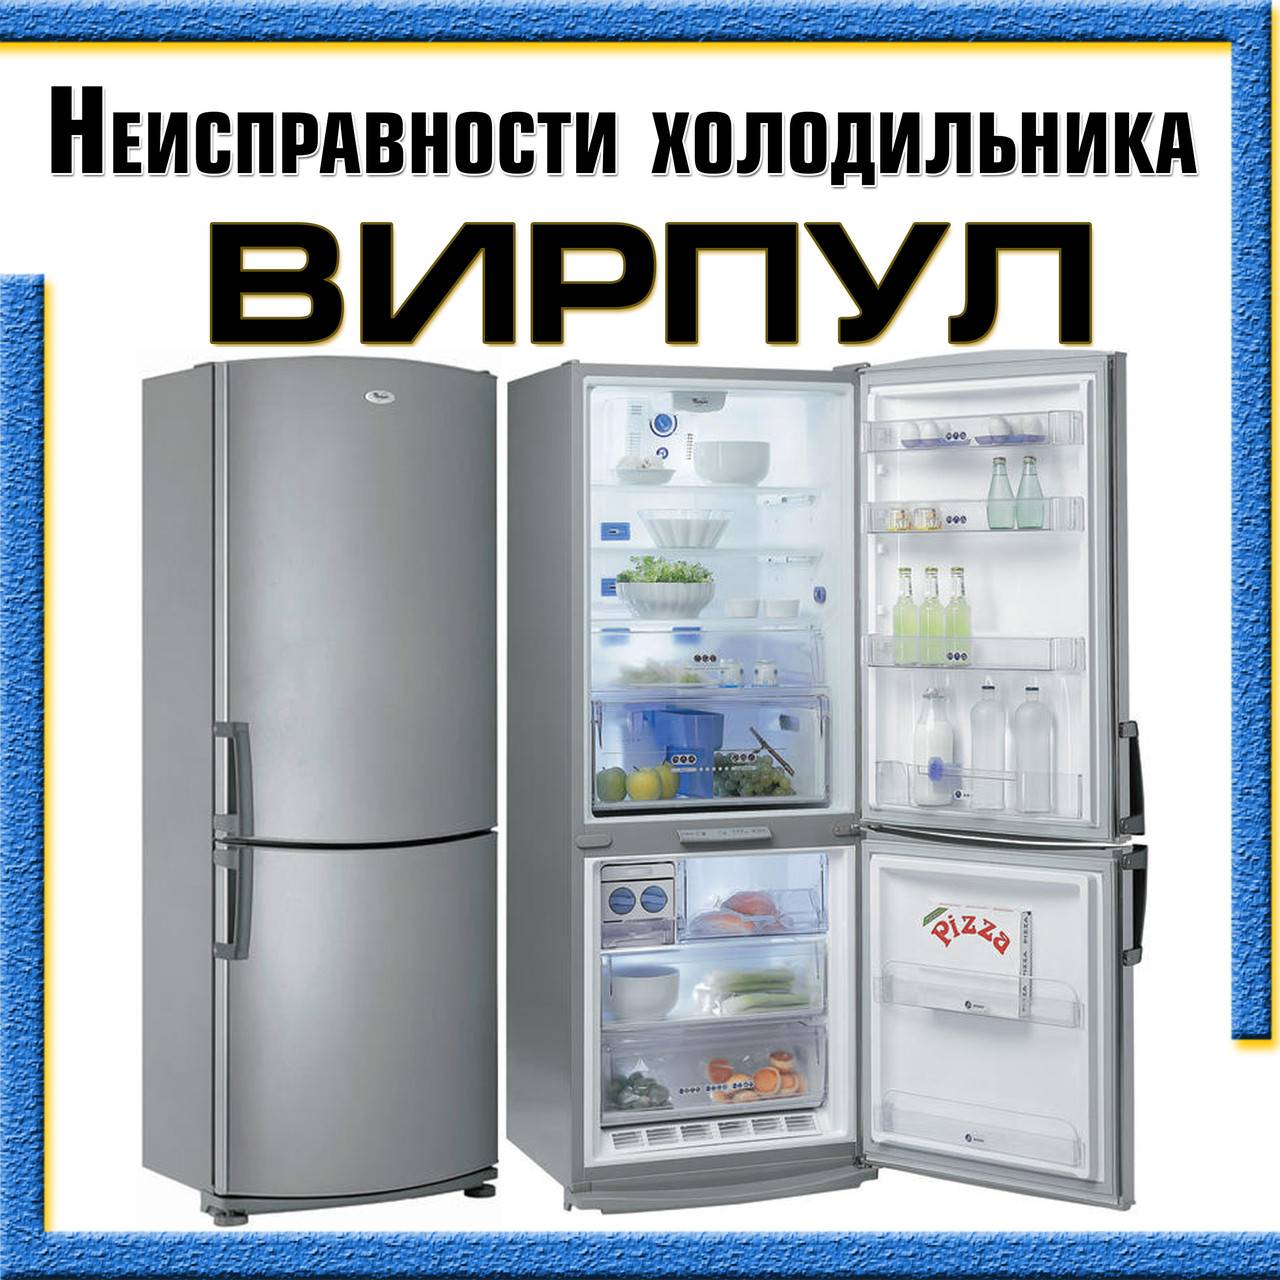 Полка для холодильника вирпул